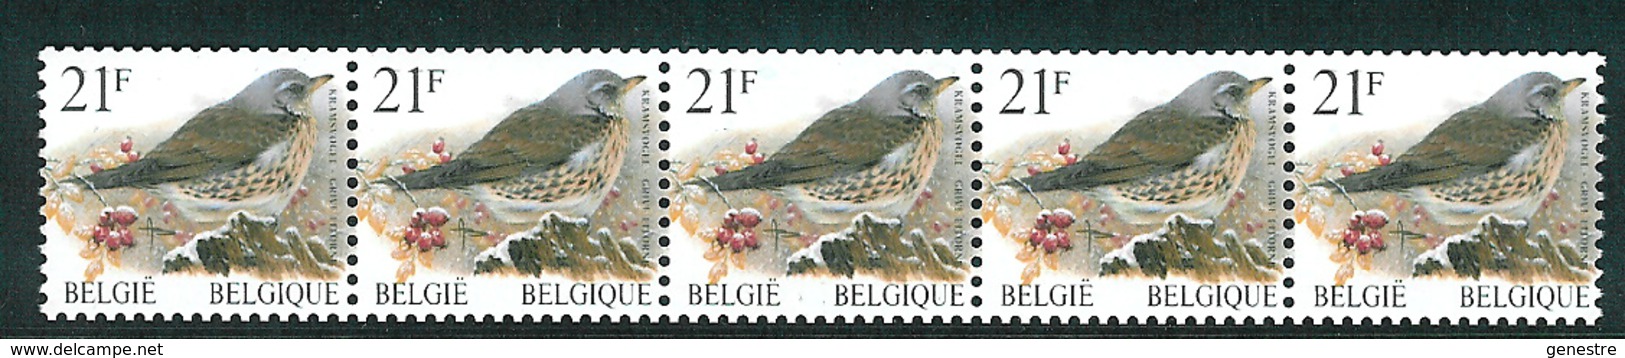 Belgique COB 2792 / R89 ** (MNH) - Valeur Faciale - Coil Stamps